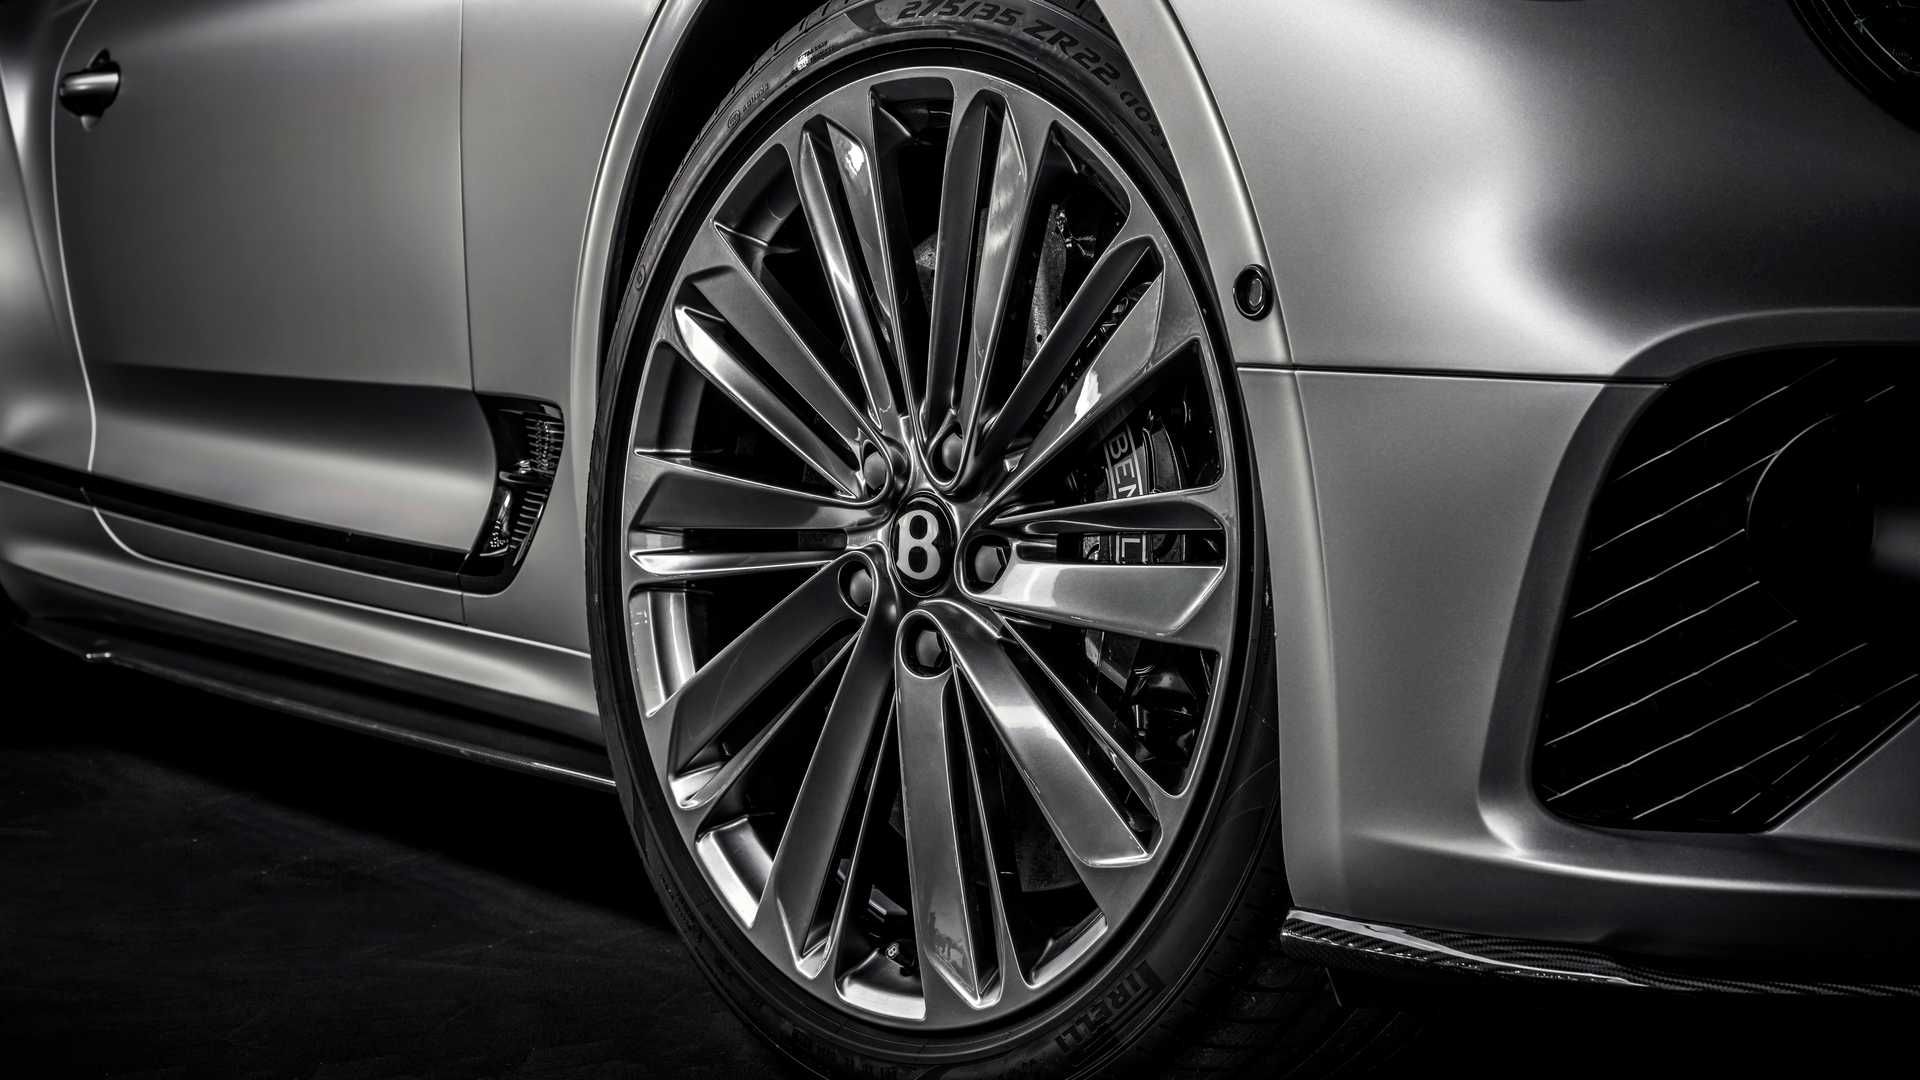 مرجع متخصصين ايران Bentley Continental GT Speed بنتلي كنتيننتال جي تي اسپيد نماي چرخ